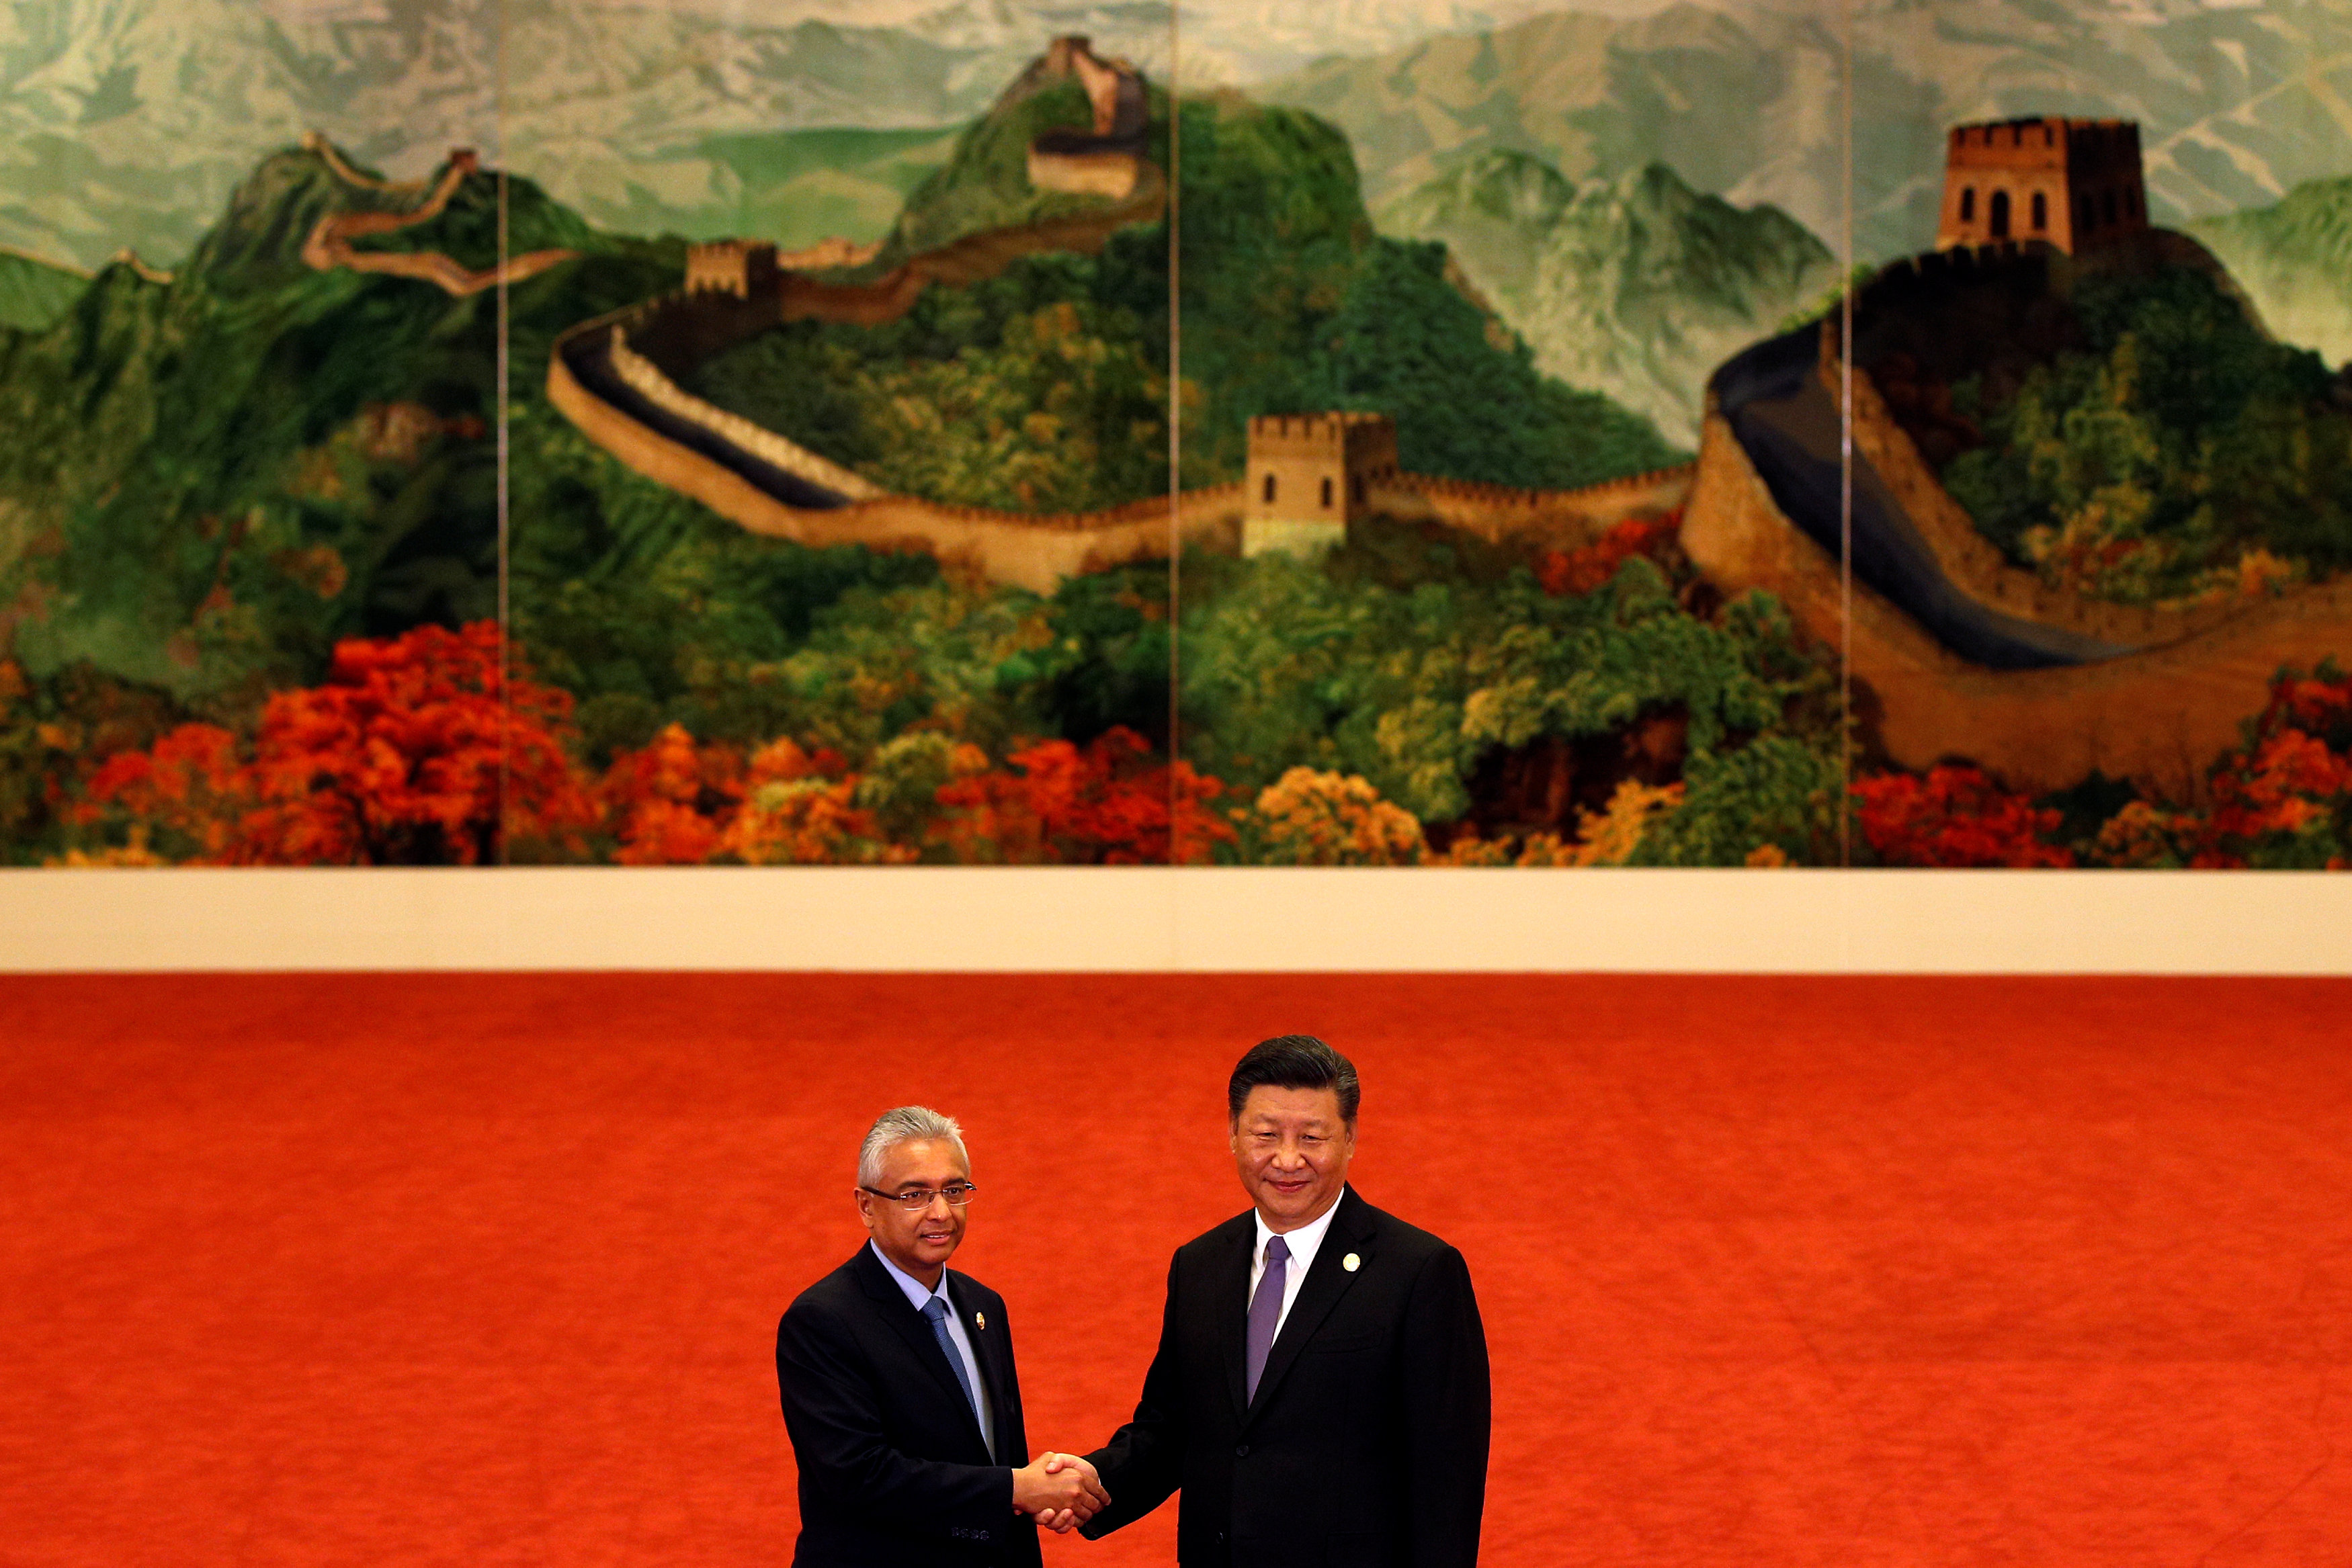 رئيس وزراء موريشيوس برافيند كومار مع رئيس الصين